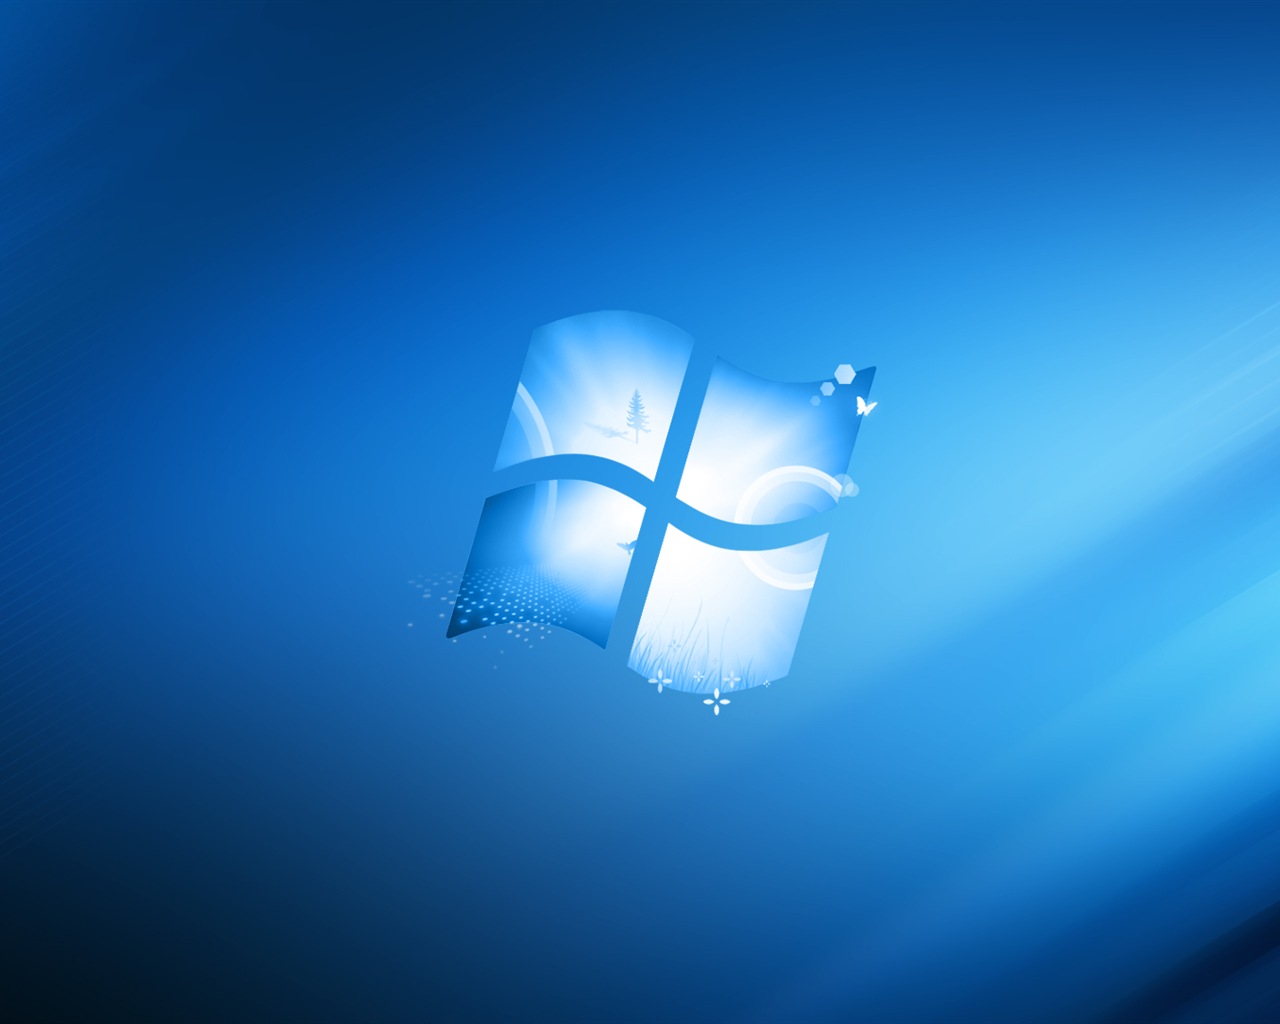 微软 Windows 9 系统主题 高清壁纸14 - 1280x1024